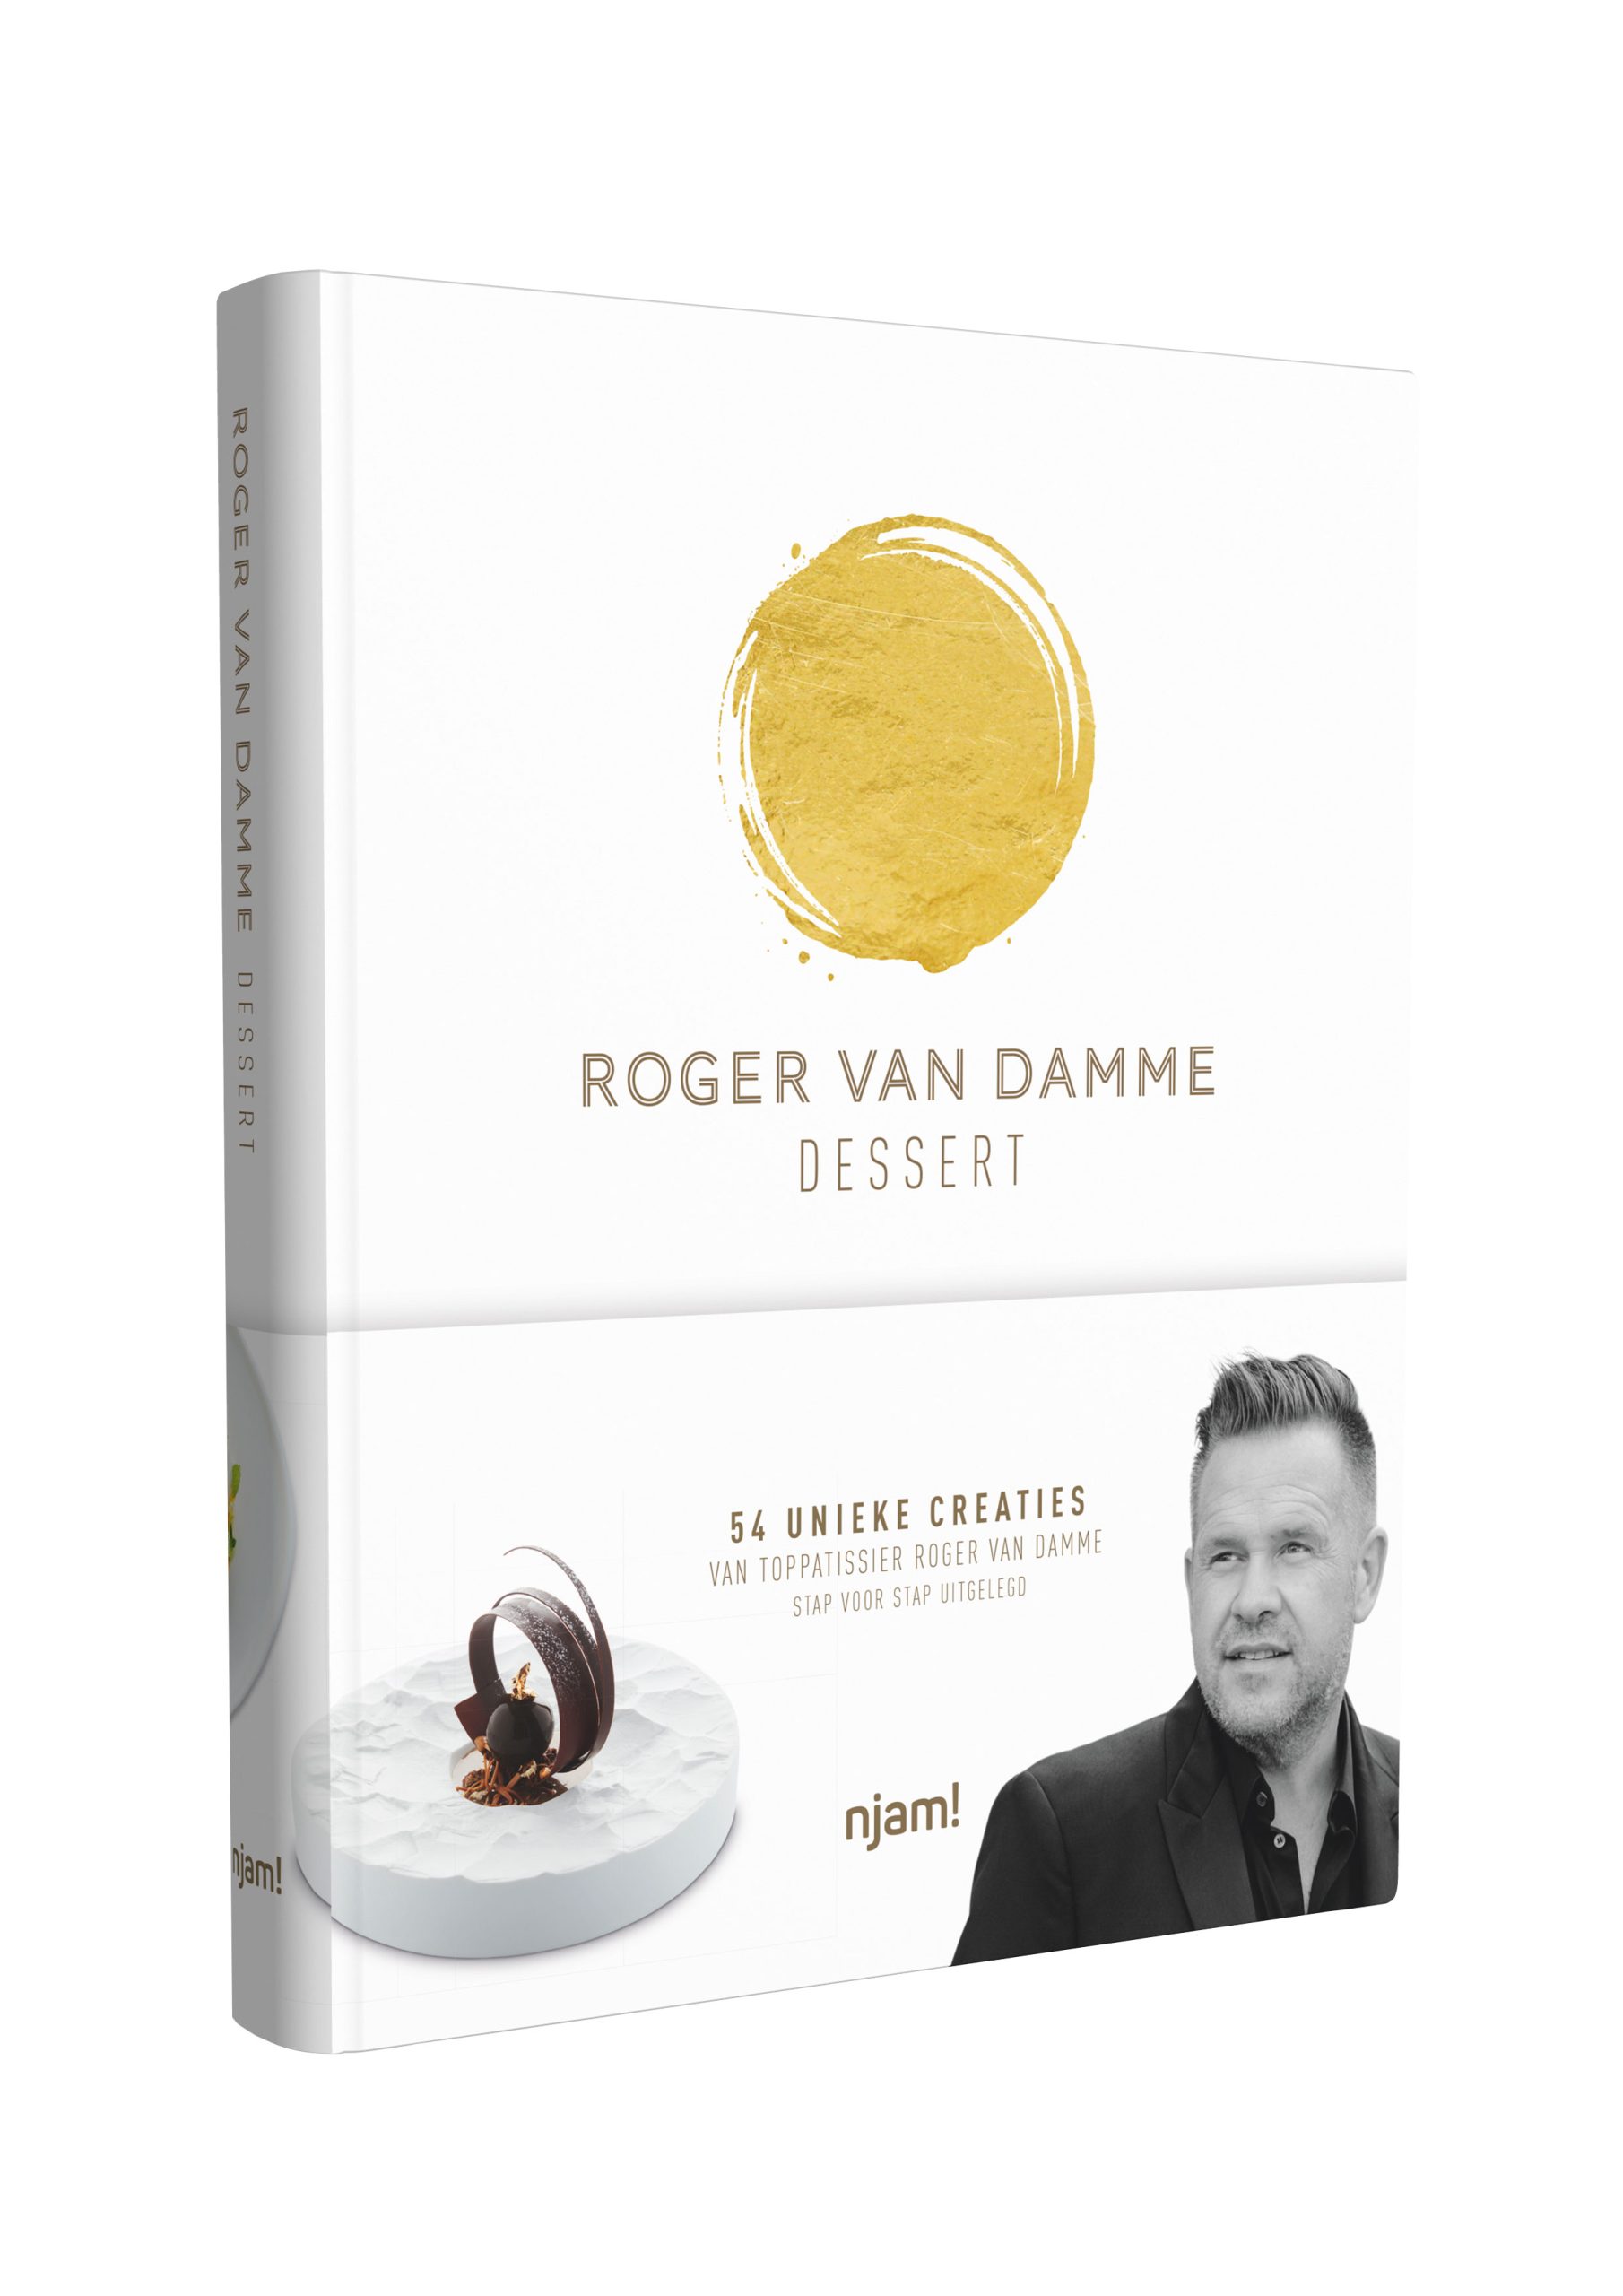 PRIMEUR: Roger van Damme heeft groot nieuws!